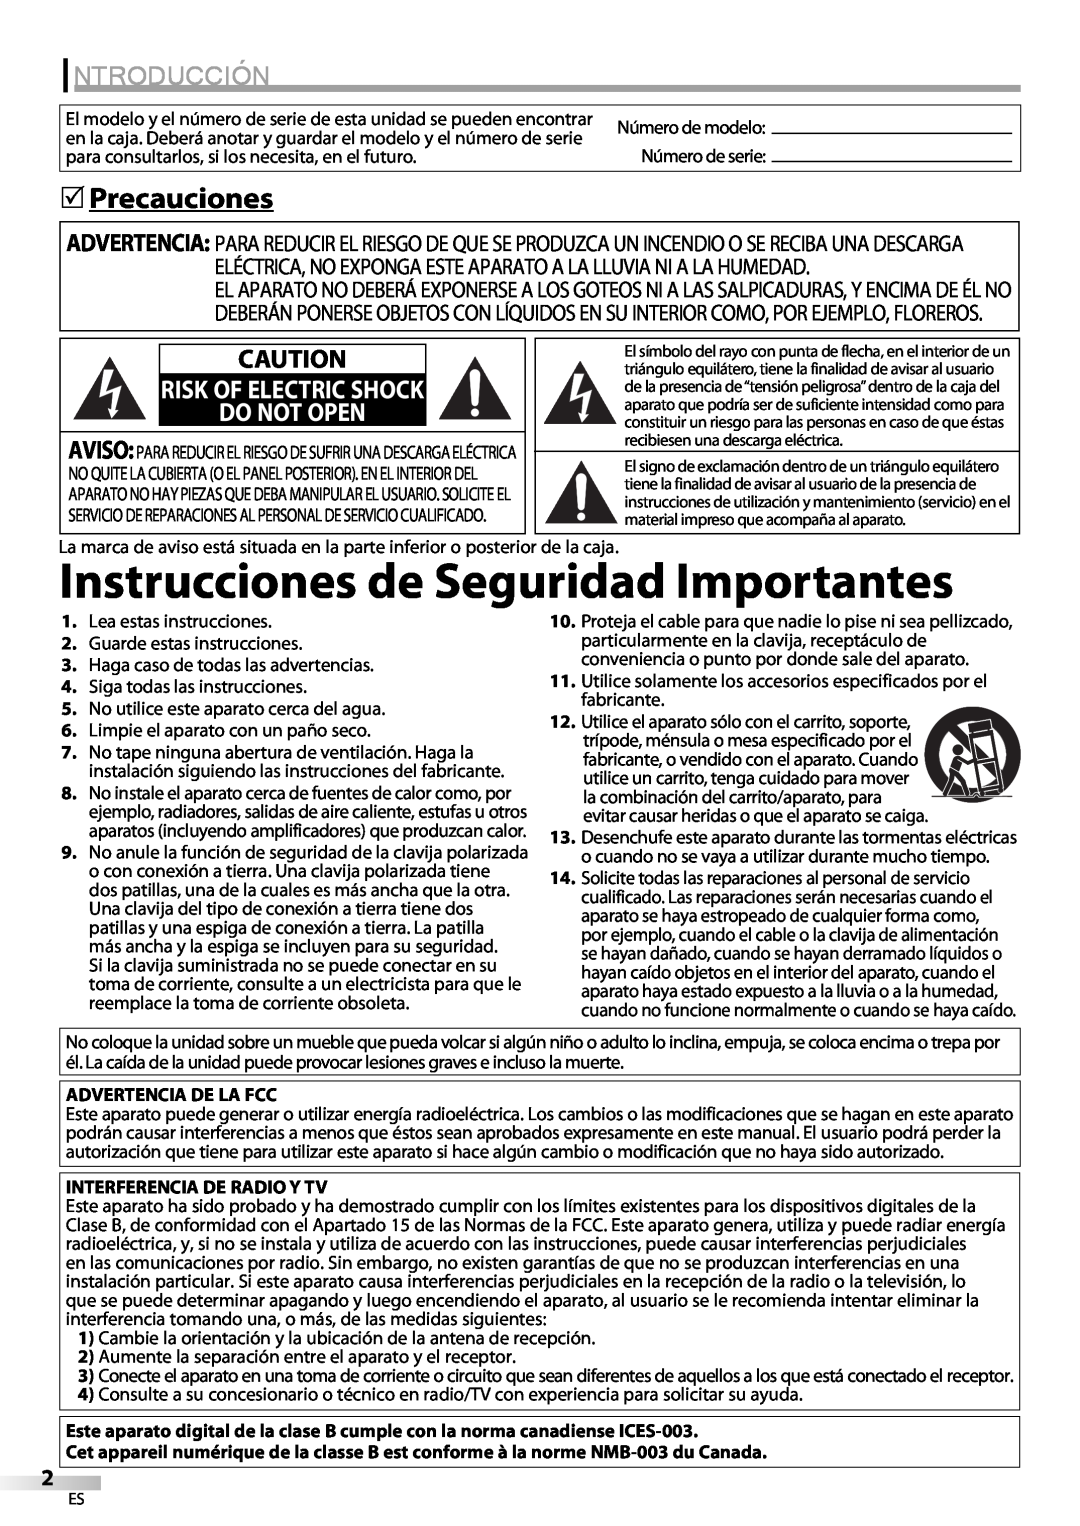 Sylvania LC225SC9 Instrucciones de Seguridad Importantes, Introducción, Precauciones, Do Not Open, Risk Of Electric Shock 